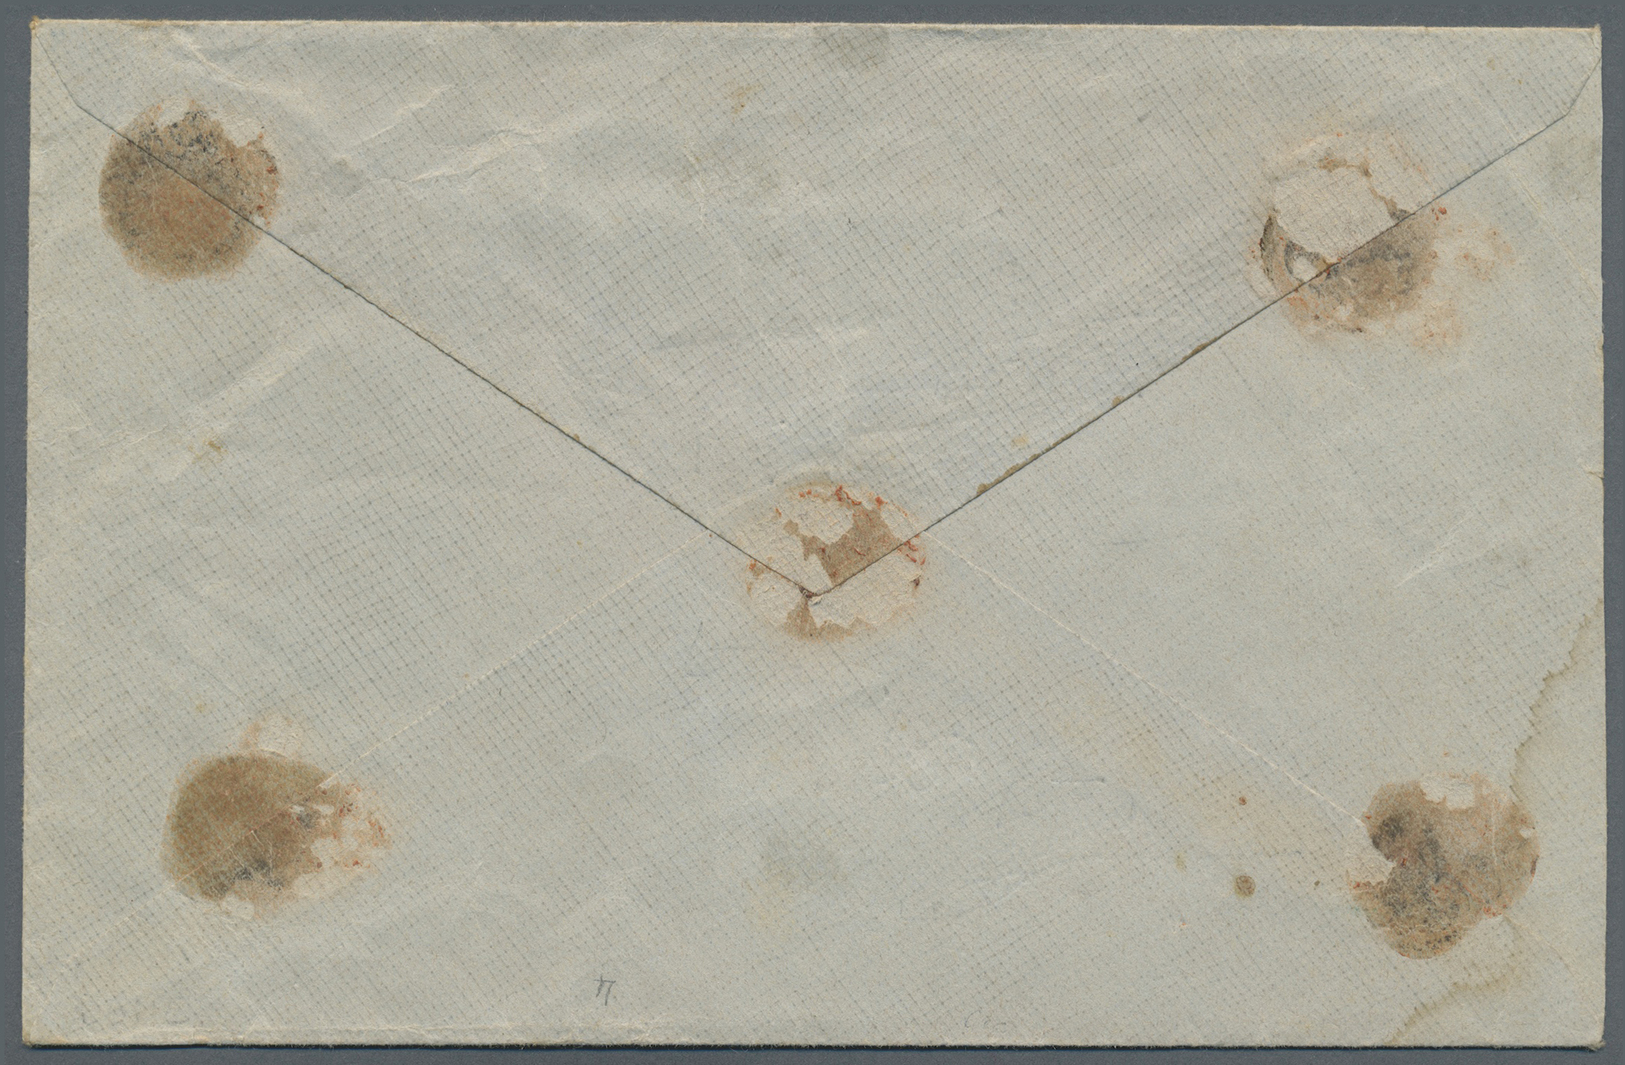 Br Portugal: 1903. Value Declared Envelope Addressed To Porto Bearing Yvert 131, 25r Rose, Yvert 138, 100r Azure - Lettres & Documents